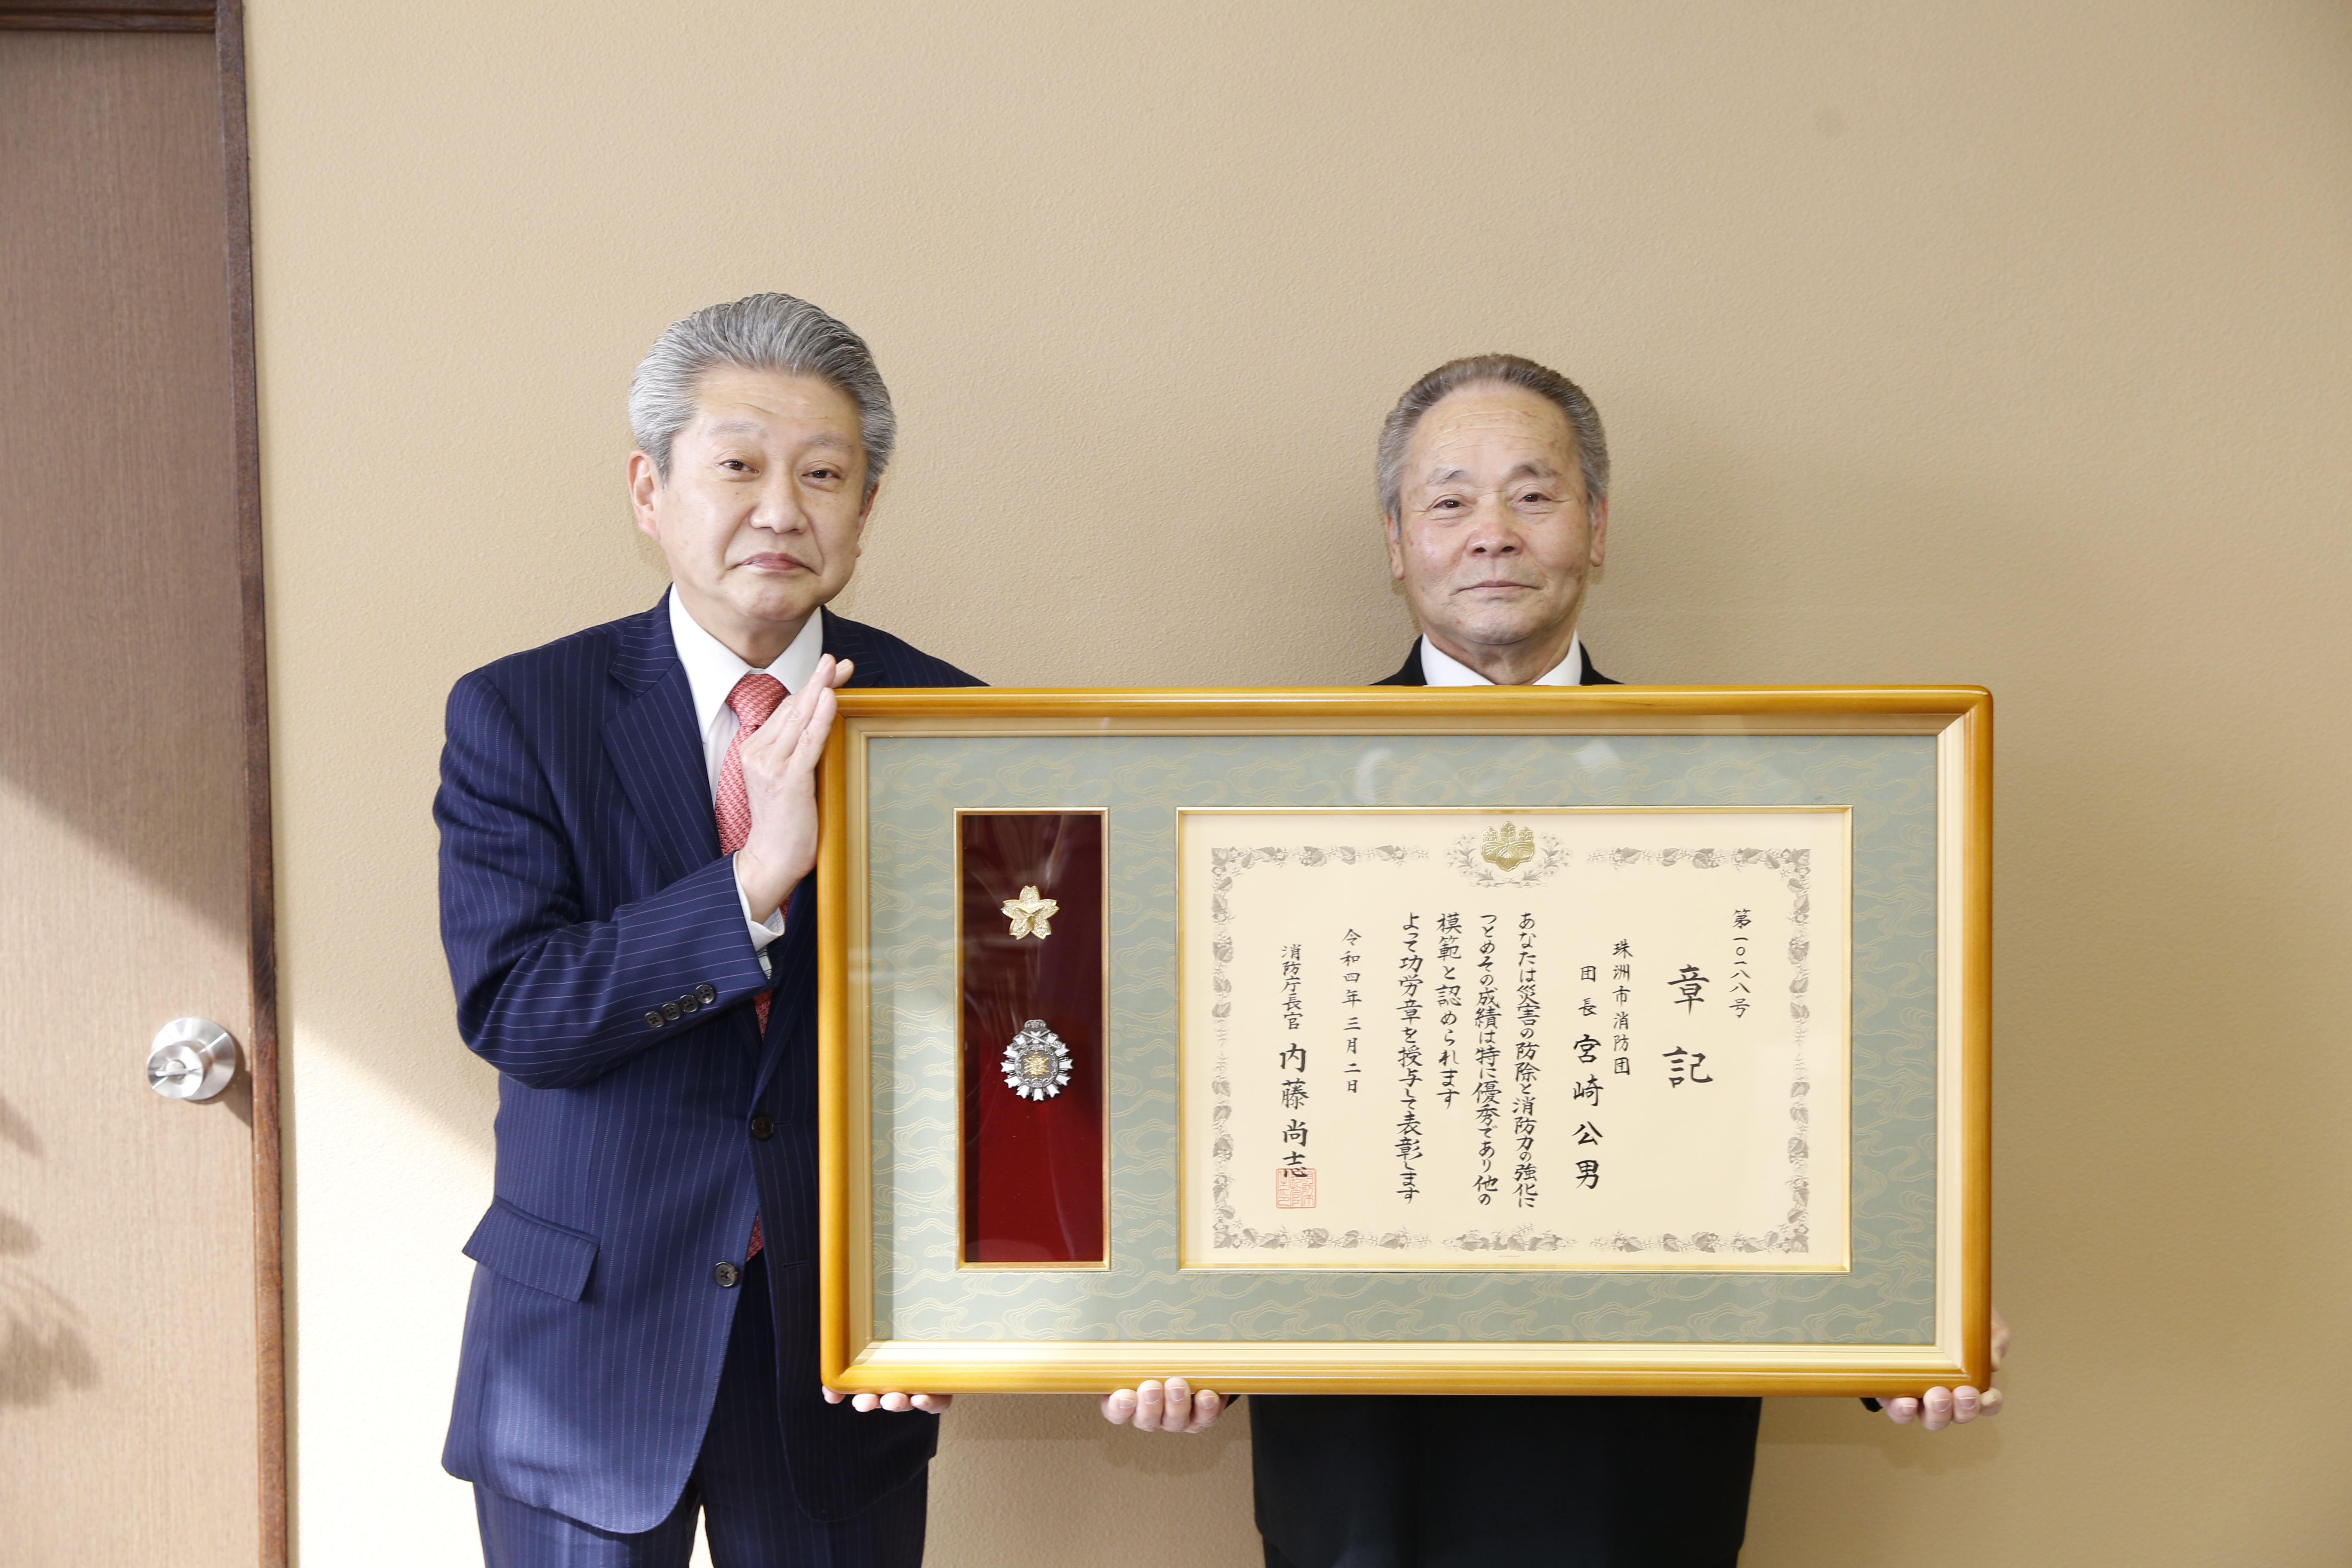 消防庁長官表彰功労章を受章した宮崎さんの画像